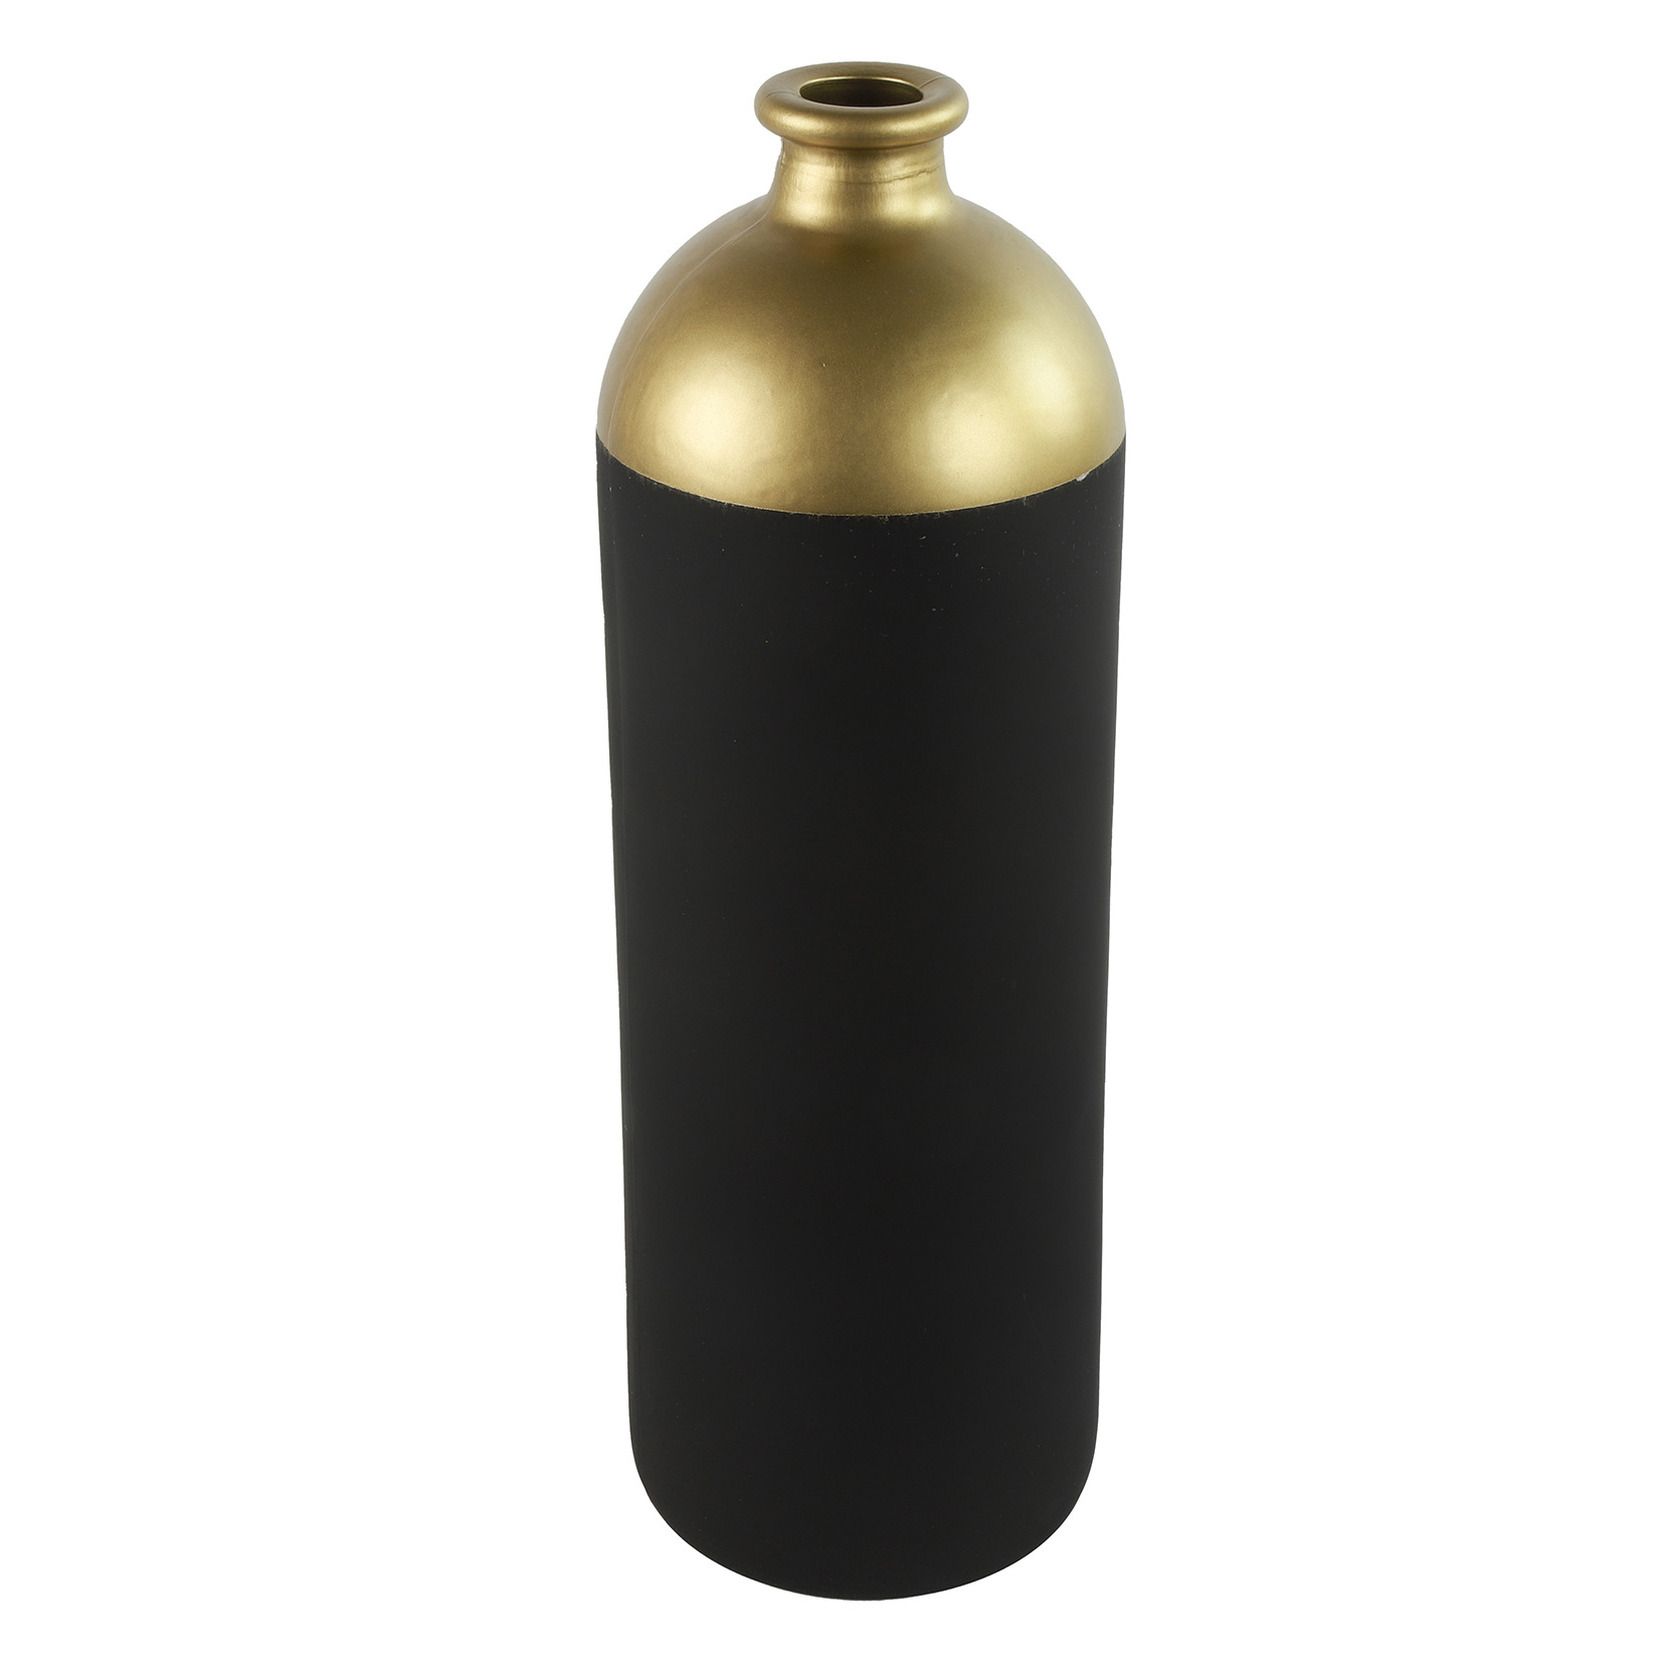 Countryfield Bloemen of deco vaas zwart-goud glas luxe fles vorm D13 x H41 cm